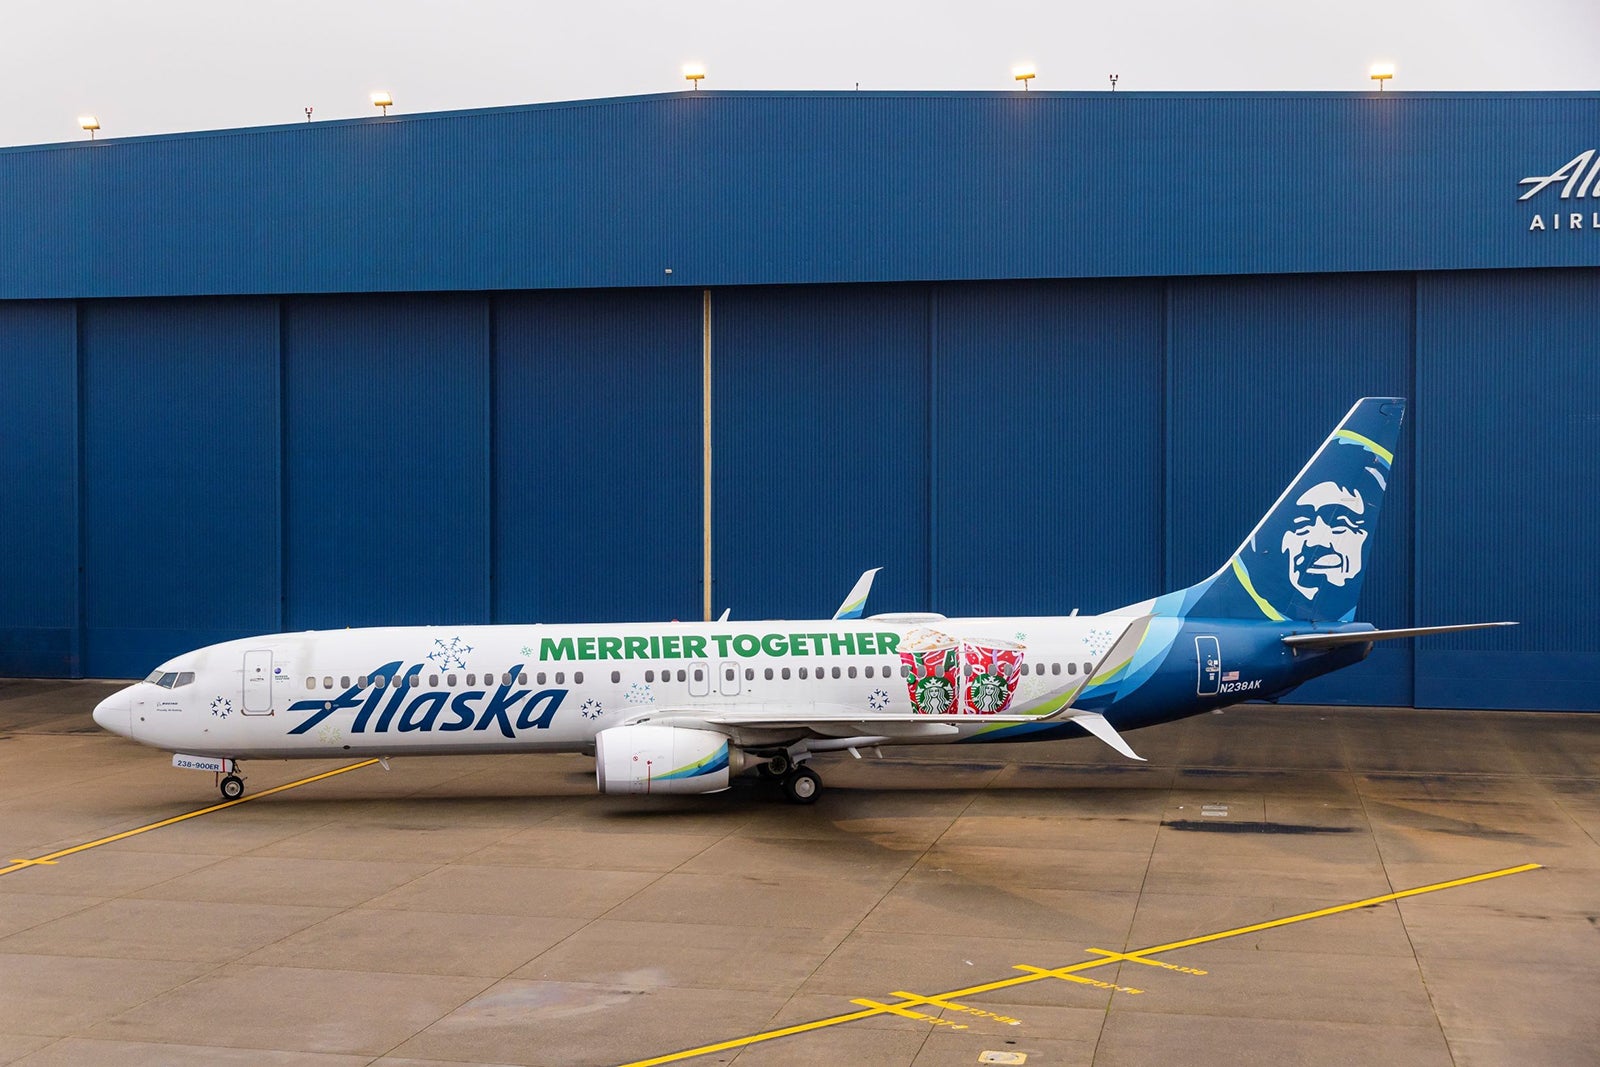 Alaska "Merrier Together" plane. (Photo courtesy of Alaska Airlines)